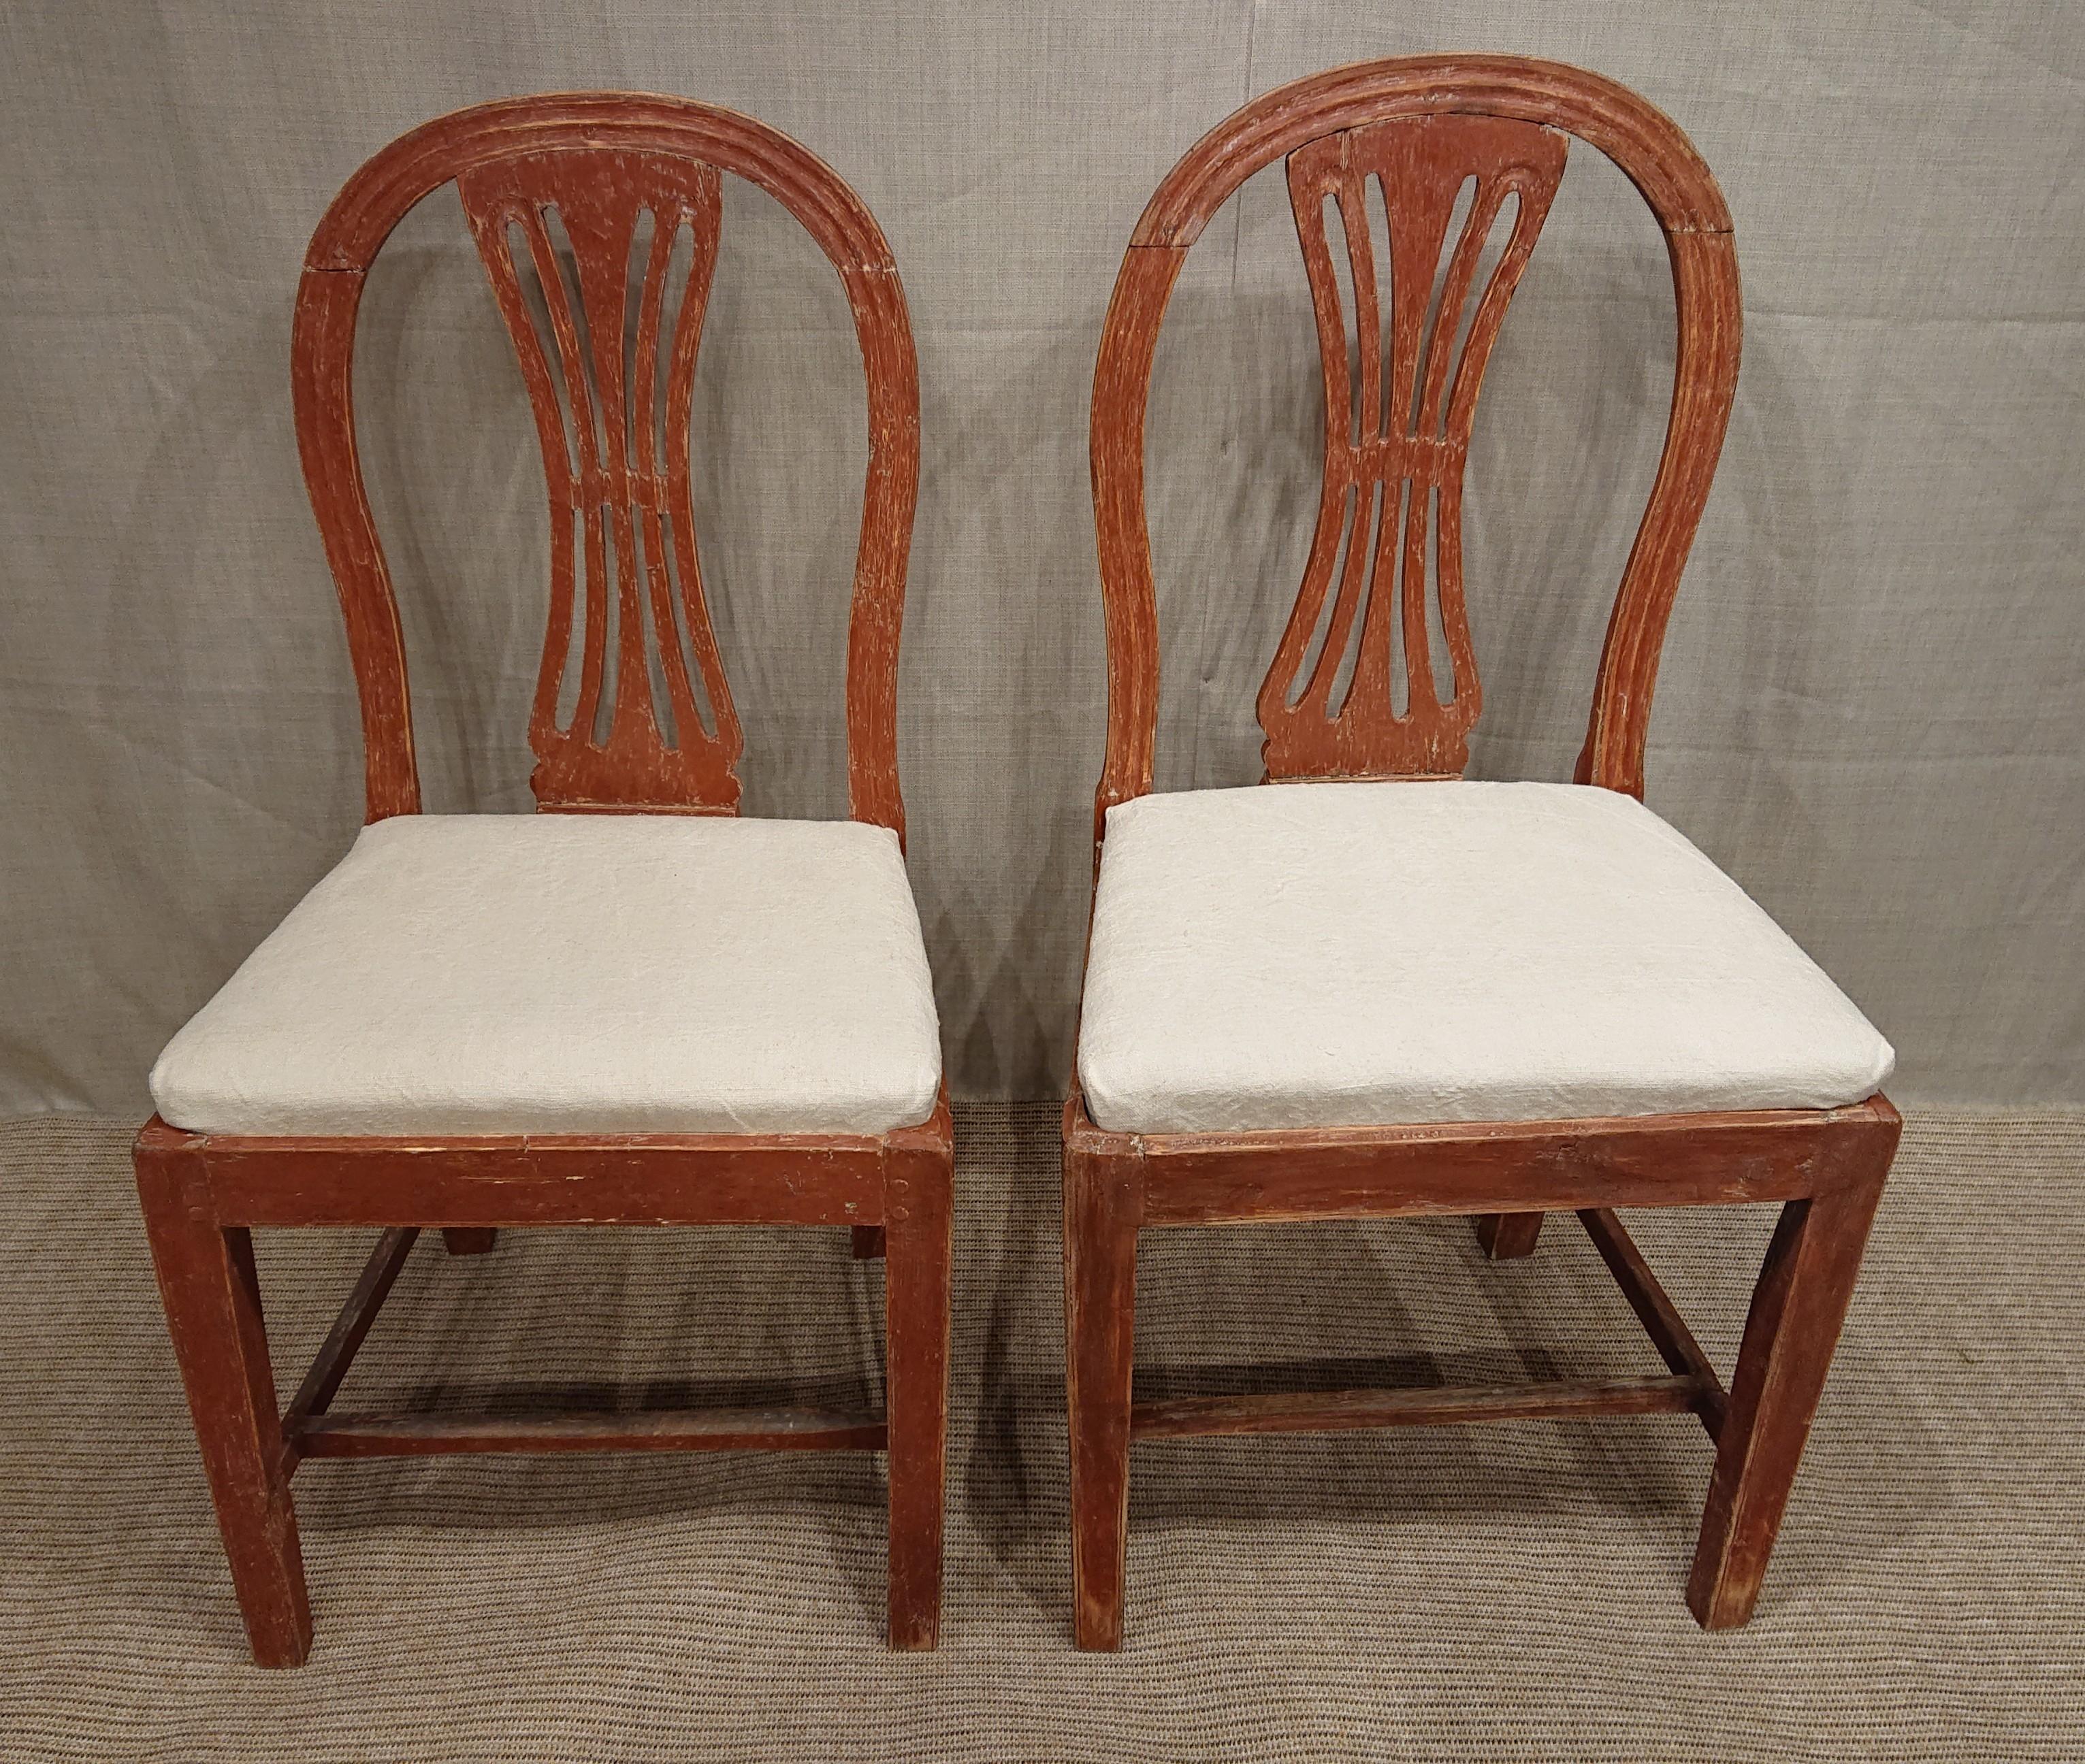 Paire de chaises gustaviennes suédoises du XIXe siècle provenant de Smaland, dans le sud de la Suède.
Grattée à la main jusqu'à sa peinture d'origine.
Les sièges sont recouverts d'un tissu en lin.
Beau modèle avec des côtes dans le dos.
Fabriqué